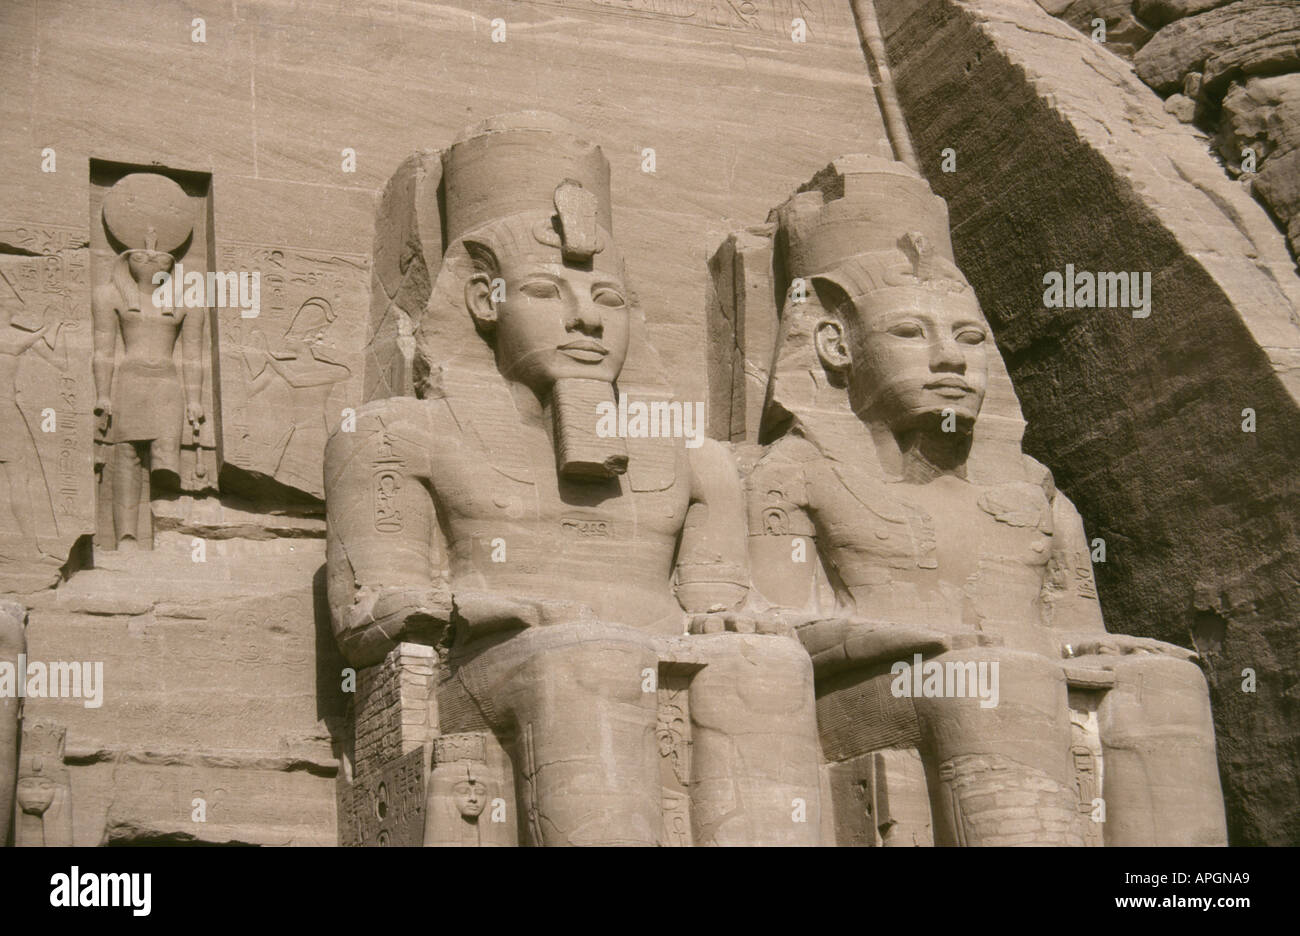 Ramases The Great, Abu Simbel, Egypt Stock Photo